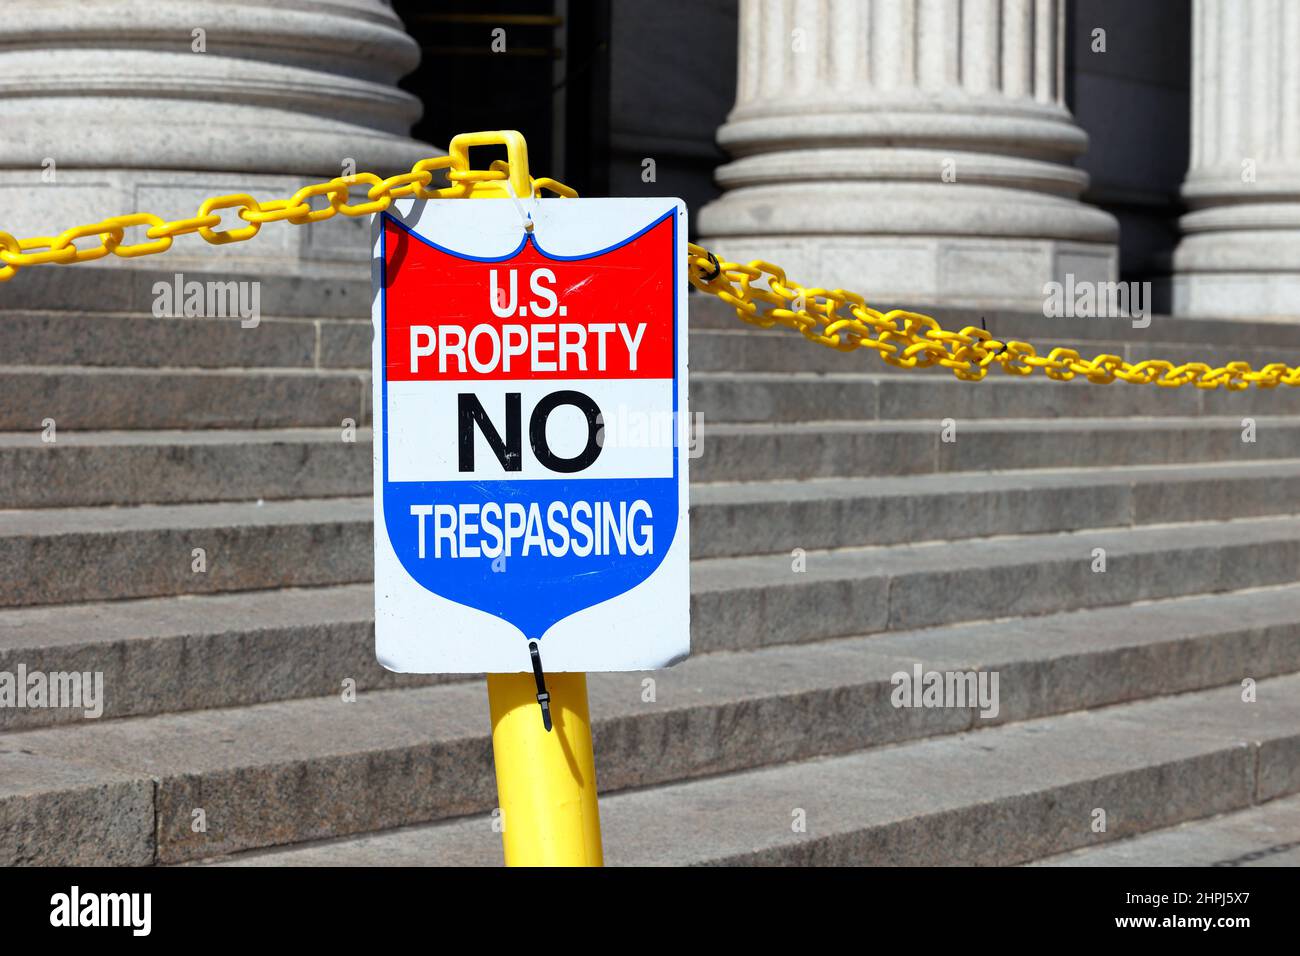 Un cartello recita 'US Property No Trespassing' sui gradini di un edificio. Foto Stock